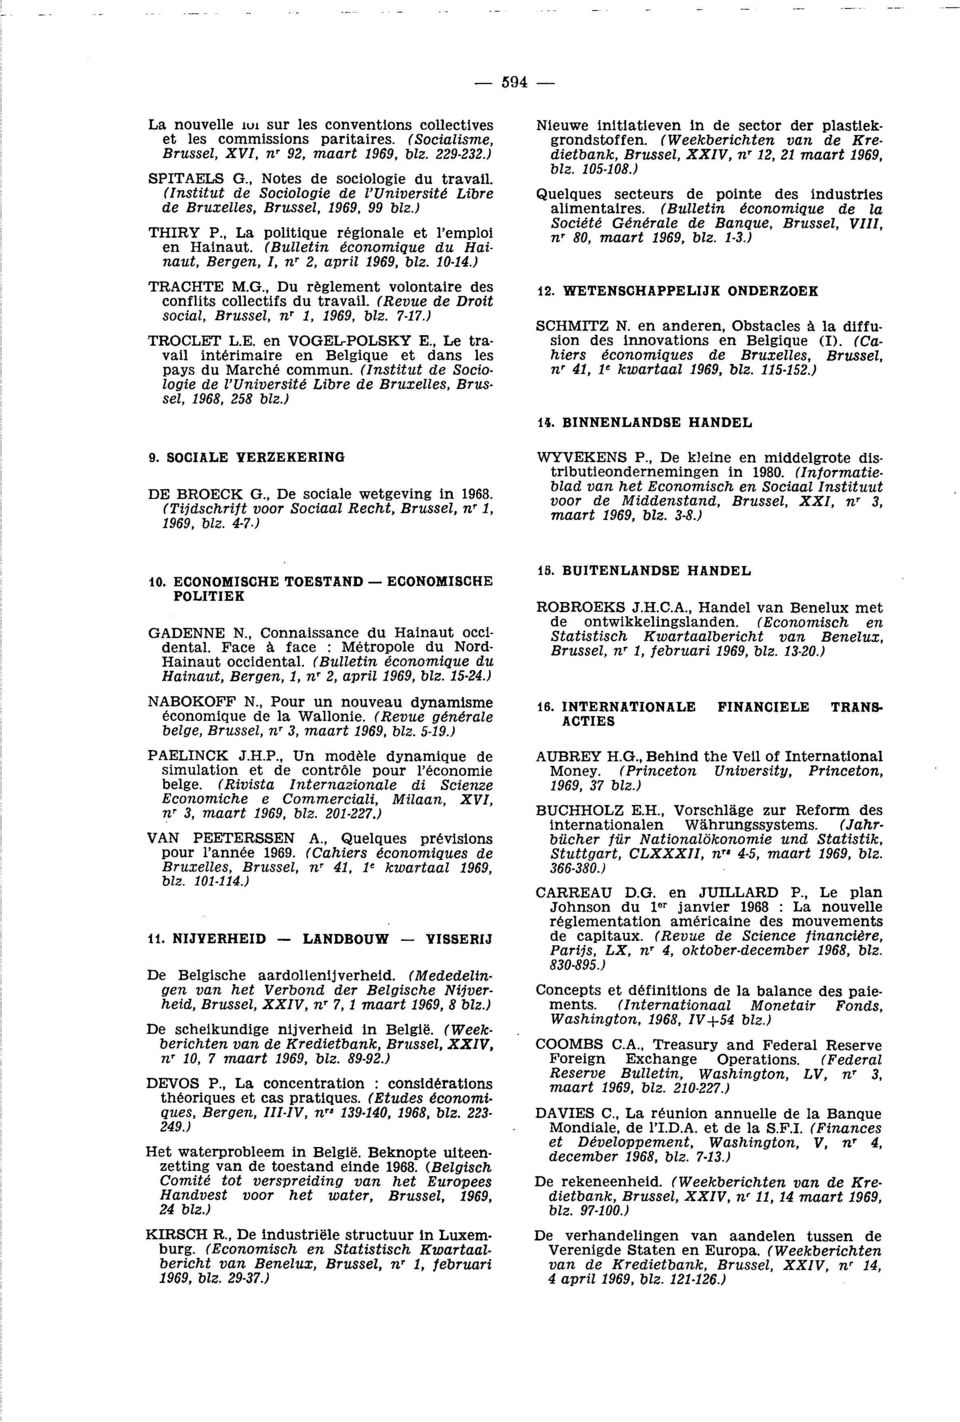 (Bulletin économique du Hainaut, Bergen, I, nr 2, april 1969, blz. 1014.) TRACHTE M.G., Du règlement volontaire des conflits collectifs du travail. (Revue de Droit social, Brussel, nr 1, 1969, blz.